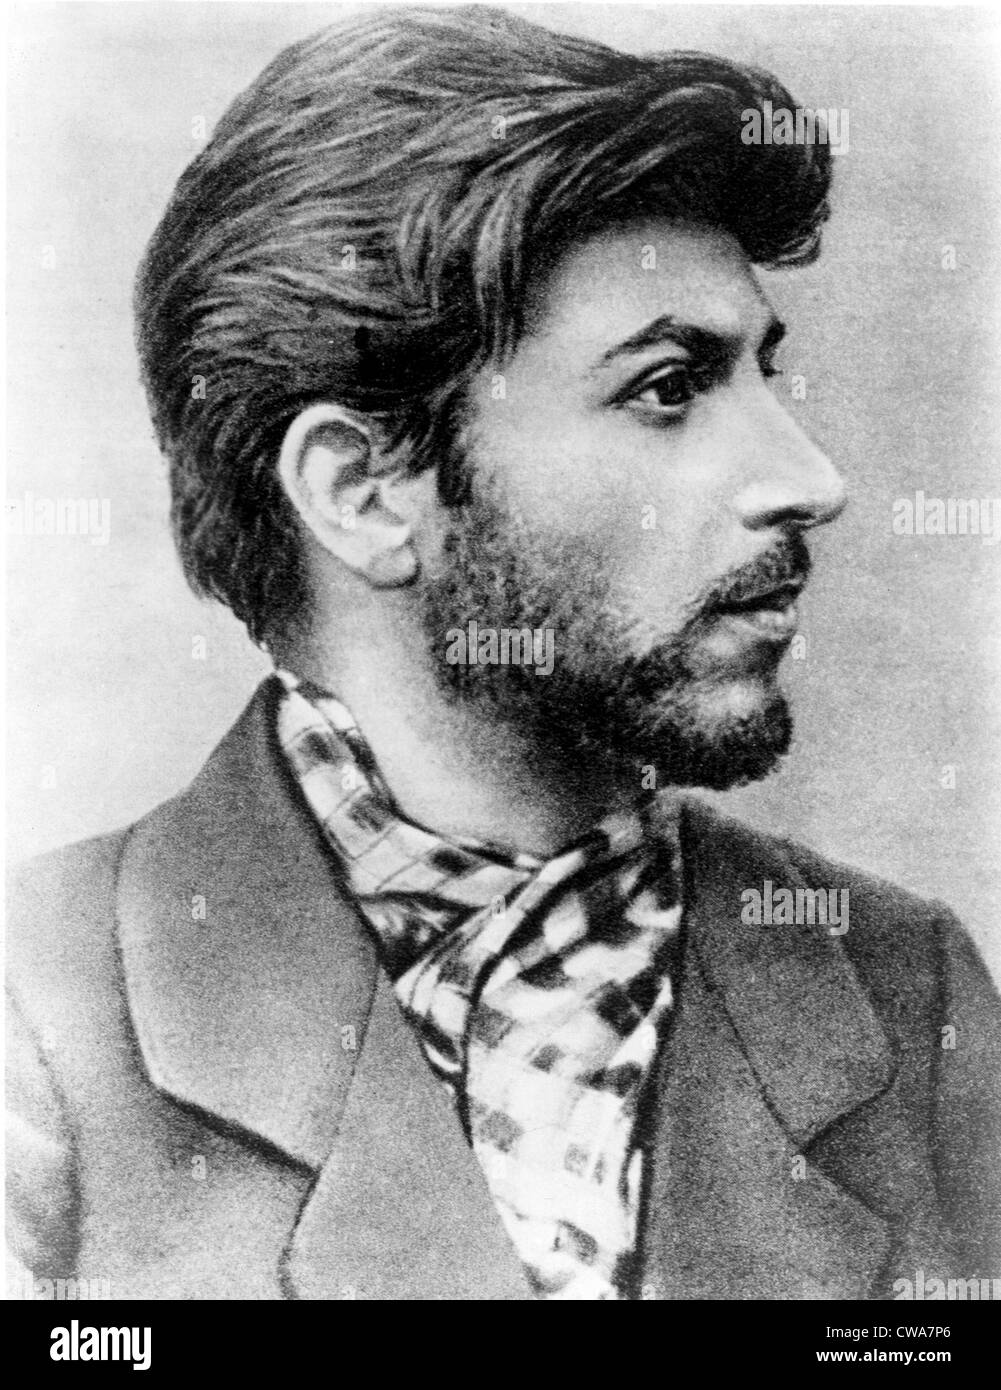 Josef Stalin als einen jungen Revolutionär 1900... Höflichkeit: CSU Archive / Everett Collection Stockfoto